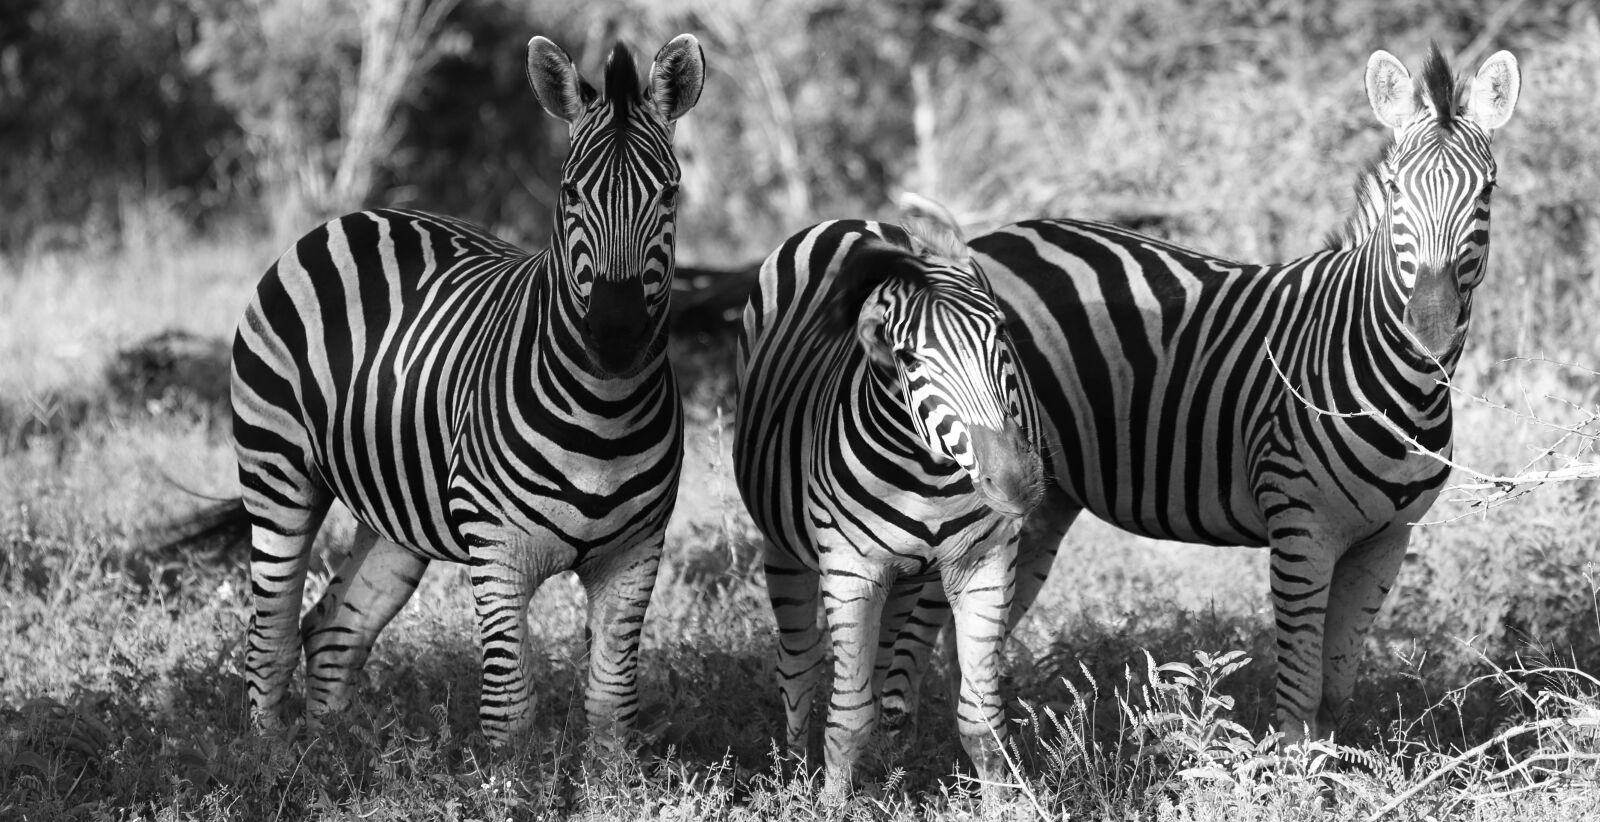 Canon EOS 70D sample photo. Zebras, south africa, safari photography